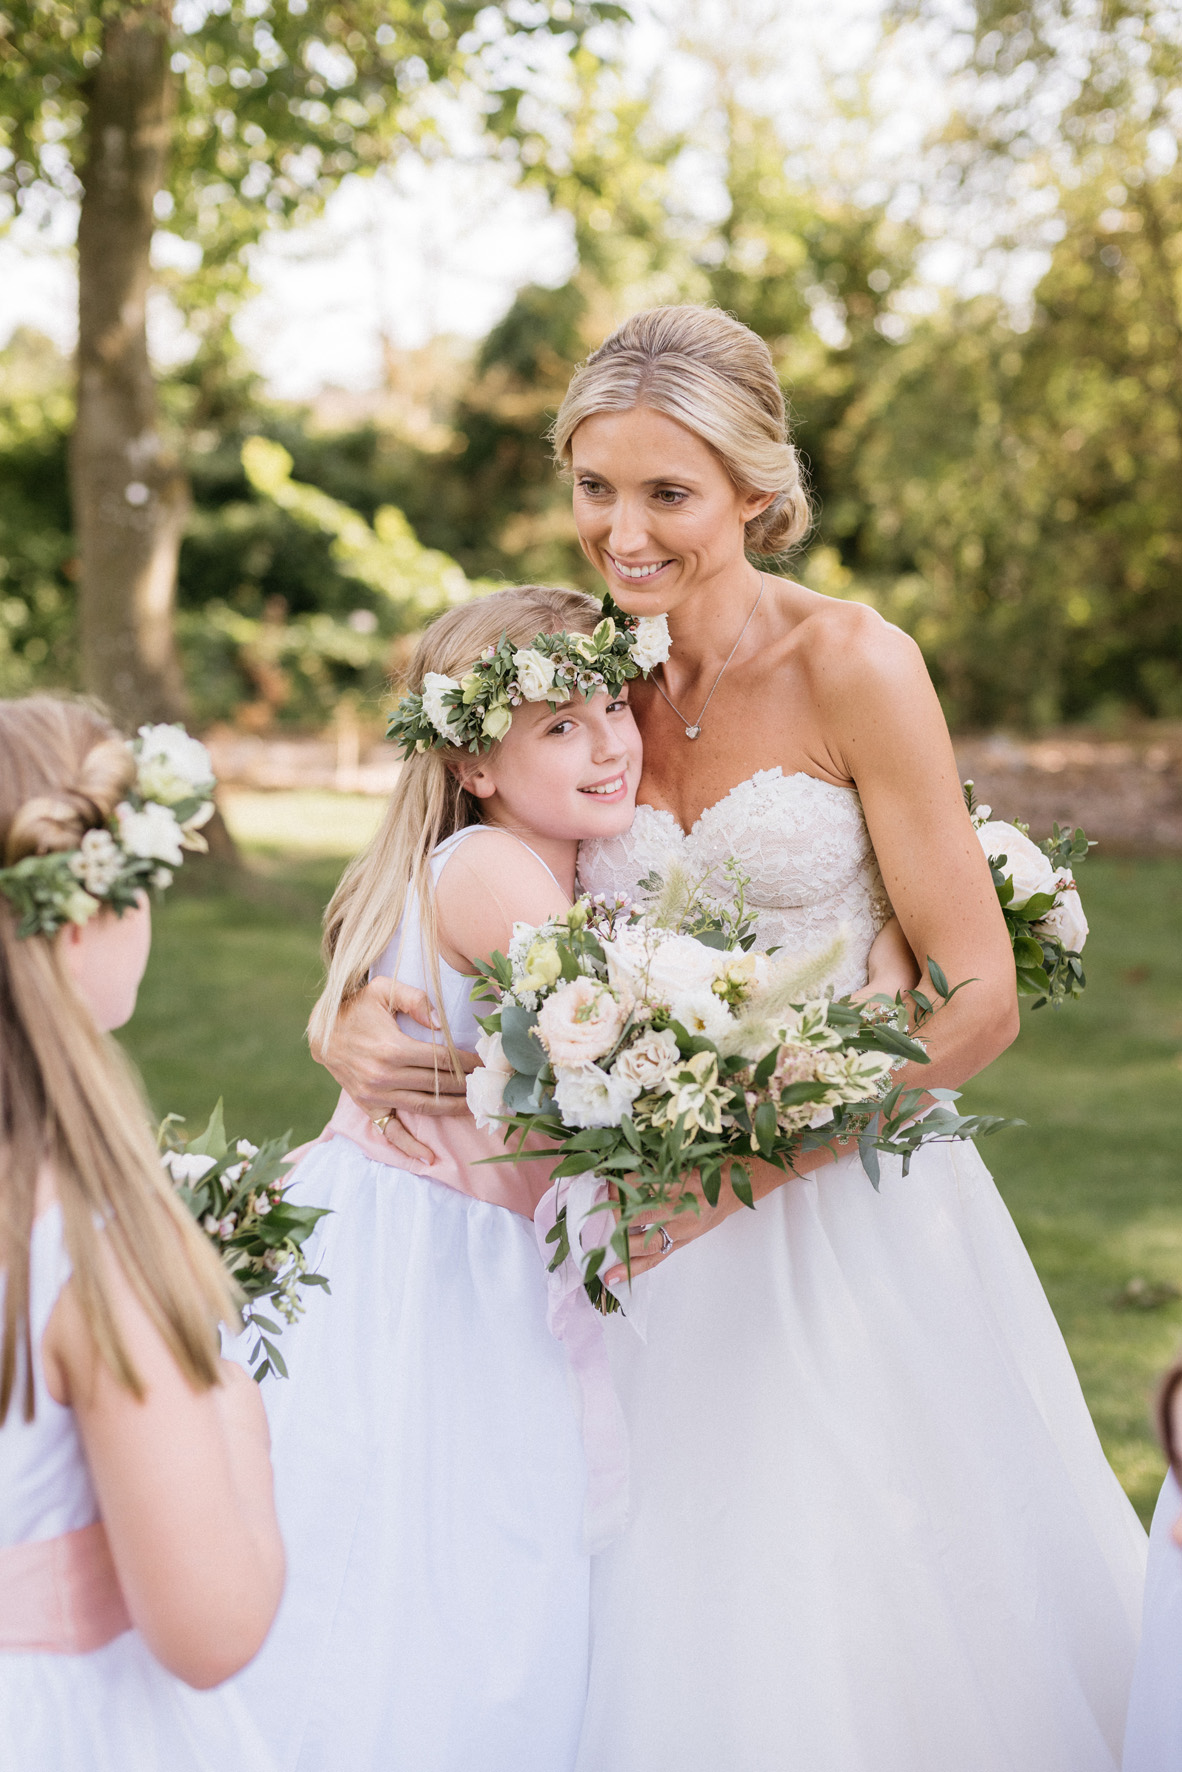 The bride and her flower girls wearing Little Eglantine flower girl dresses